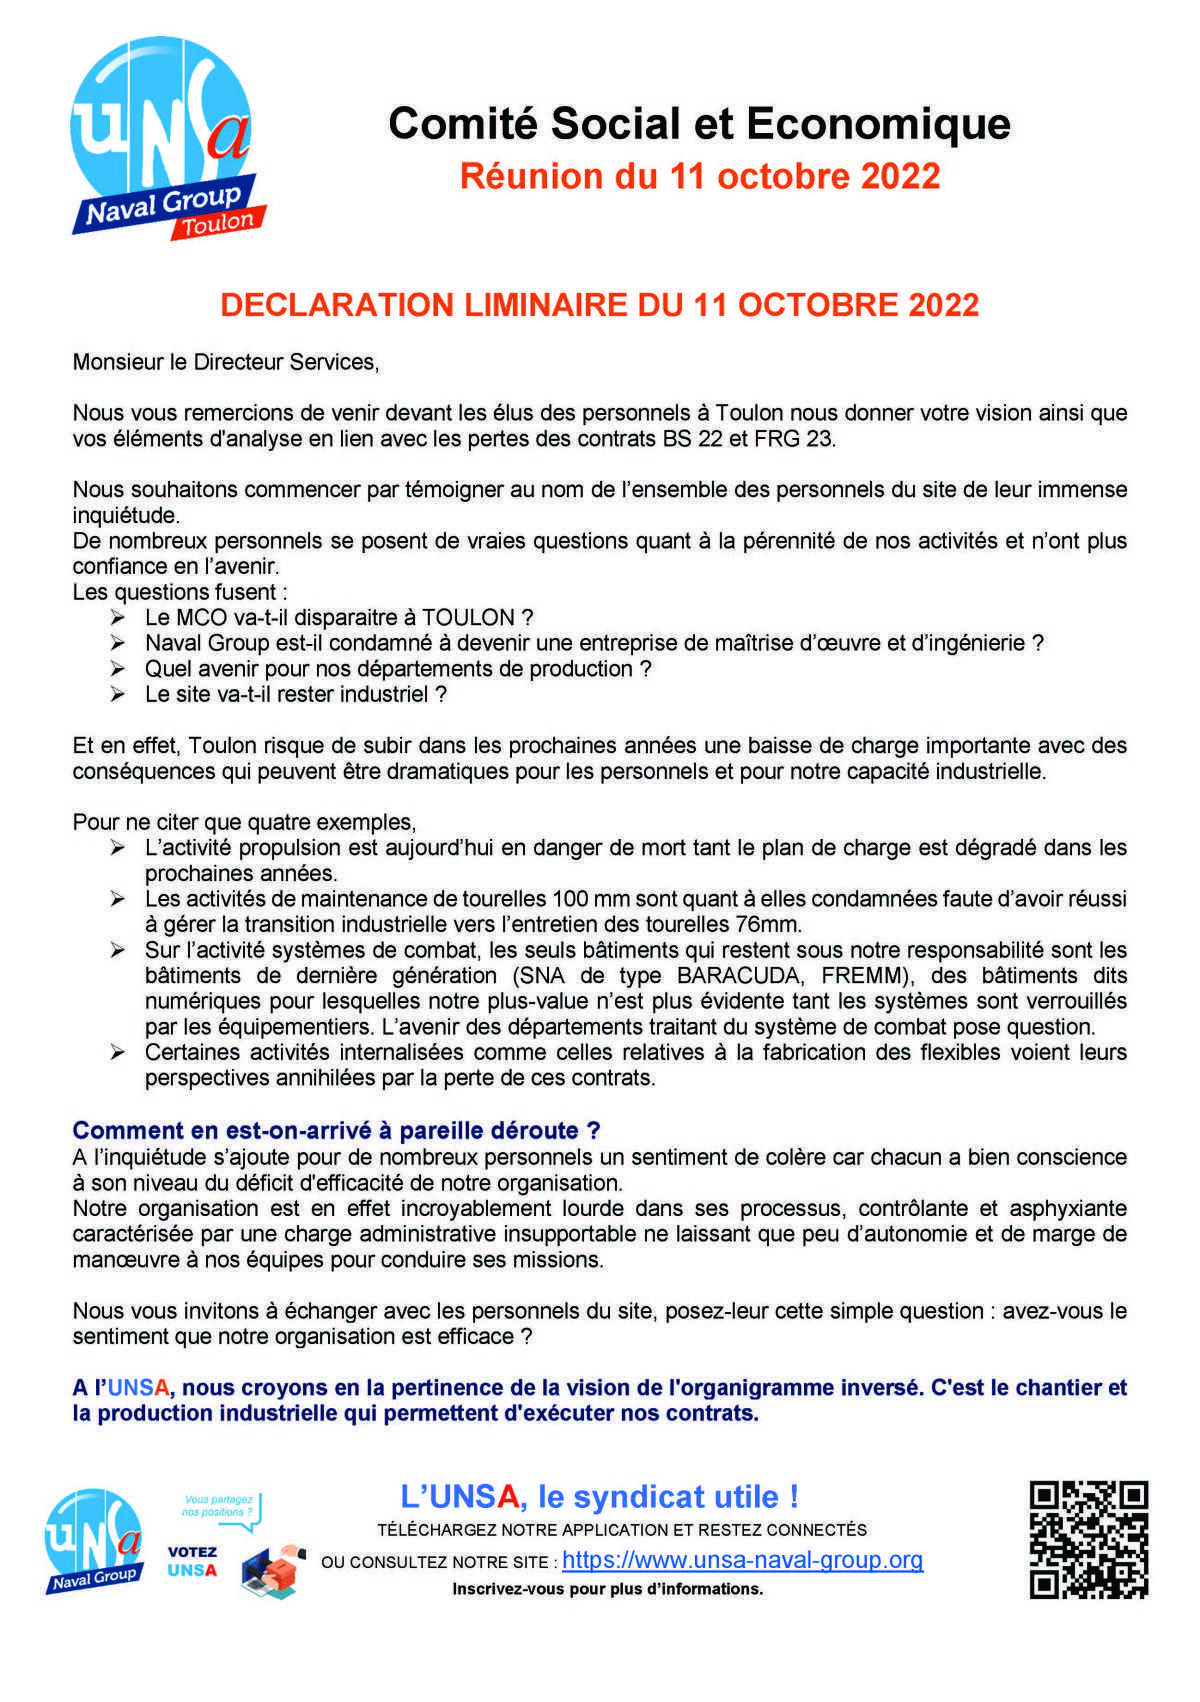 CSE de Toulon - Réunion du 11 octobre 2022 - déclaration liminaire